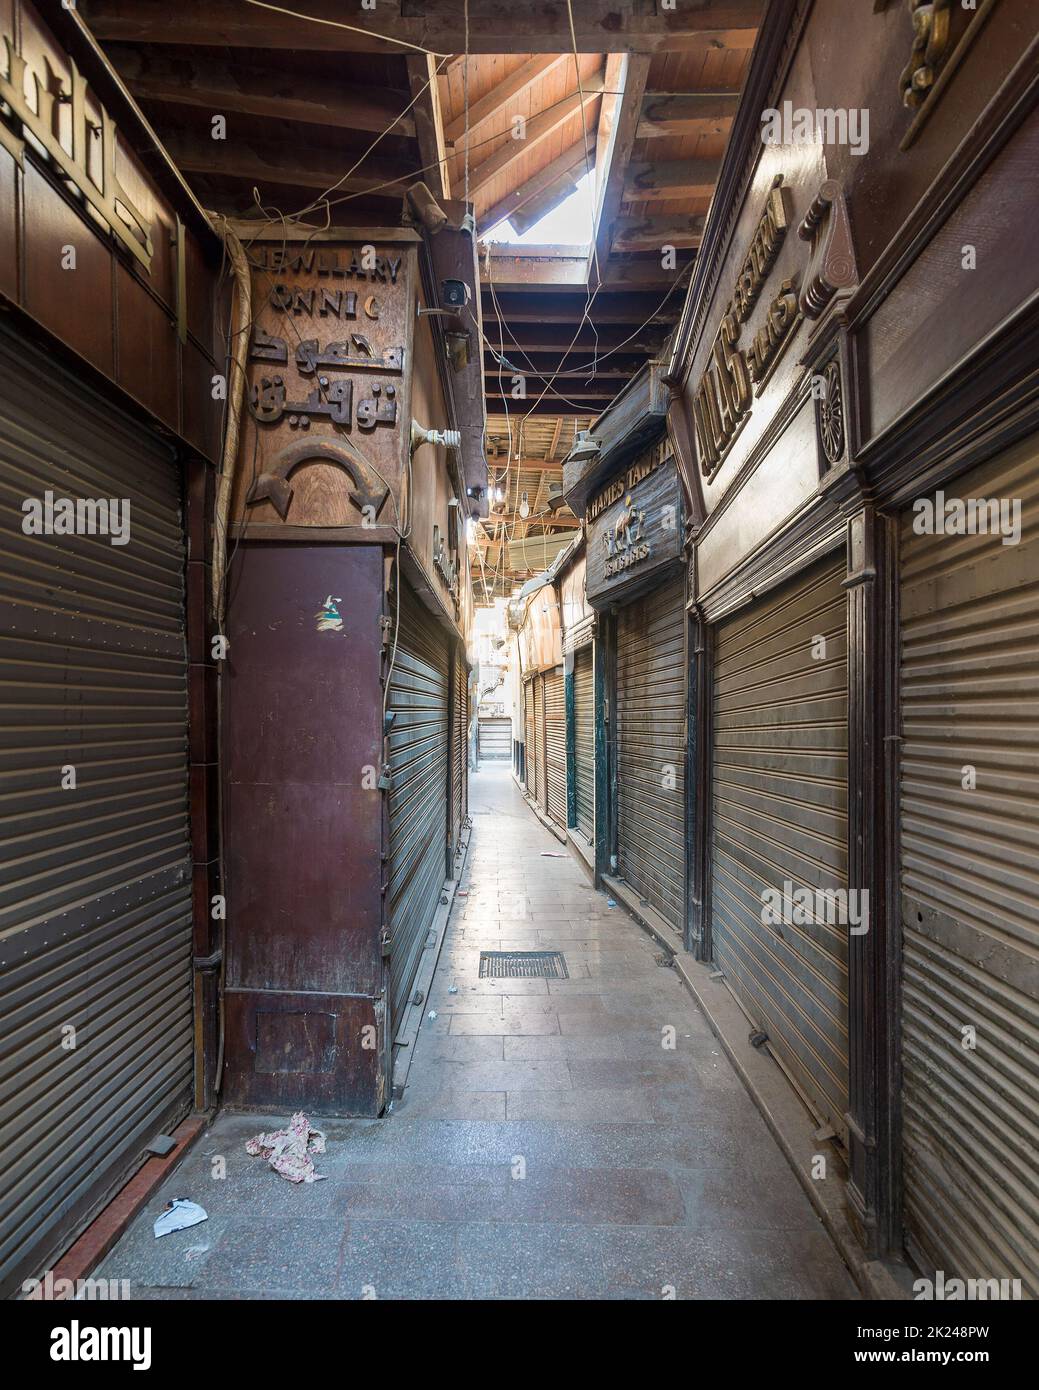 Cairo, Egitto - Giugno 26 2020: Vicoli della vecchia storica Mamluk era Khan al-Khalili famoso bazar e souq, con negozi chiusi durante il blocco Covid-19 Foto Stock